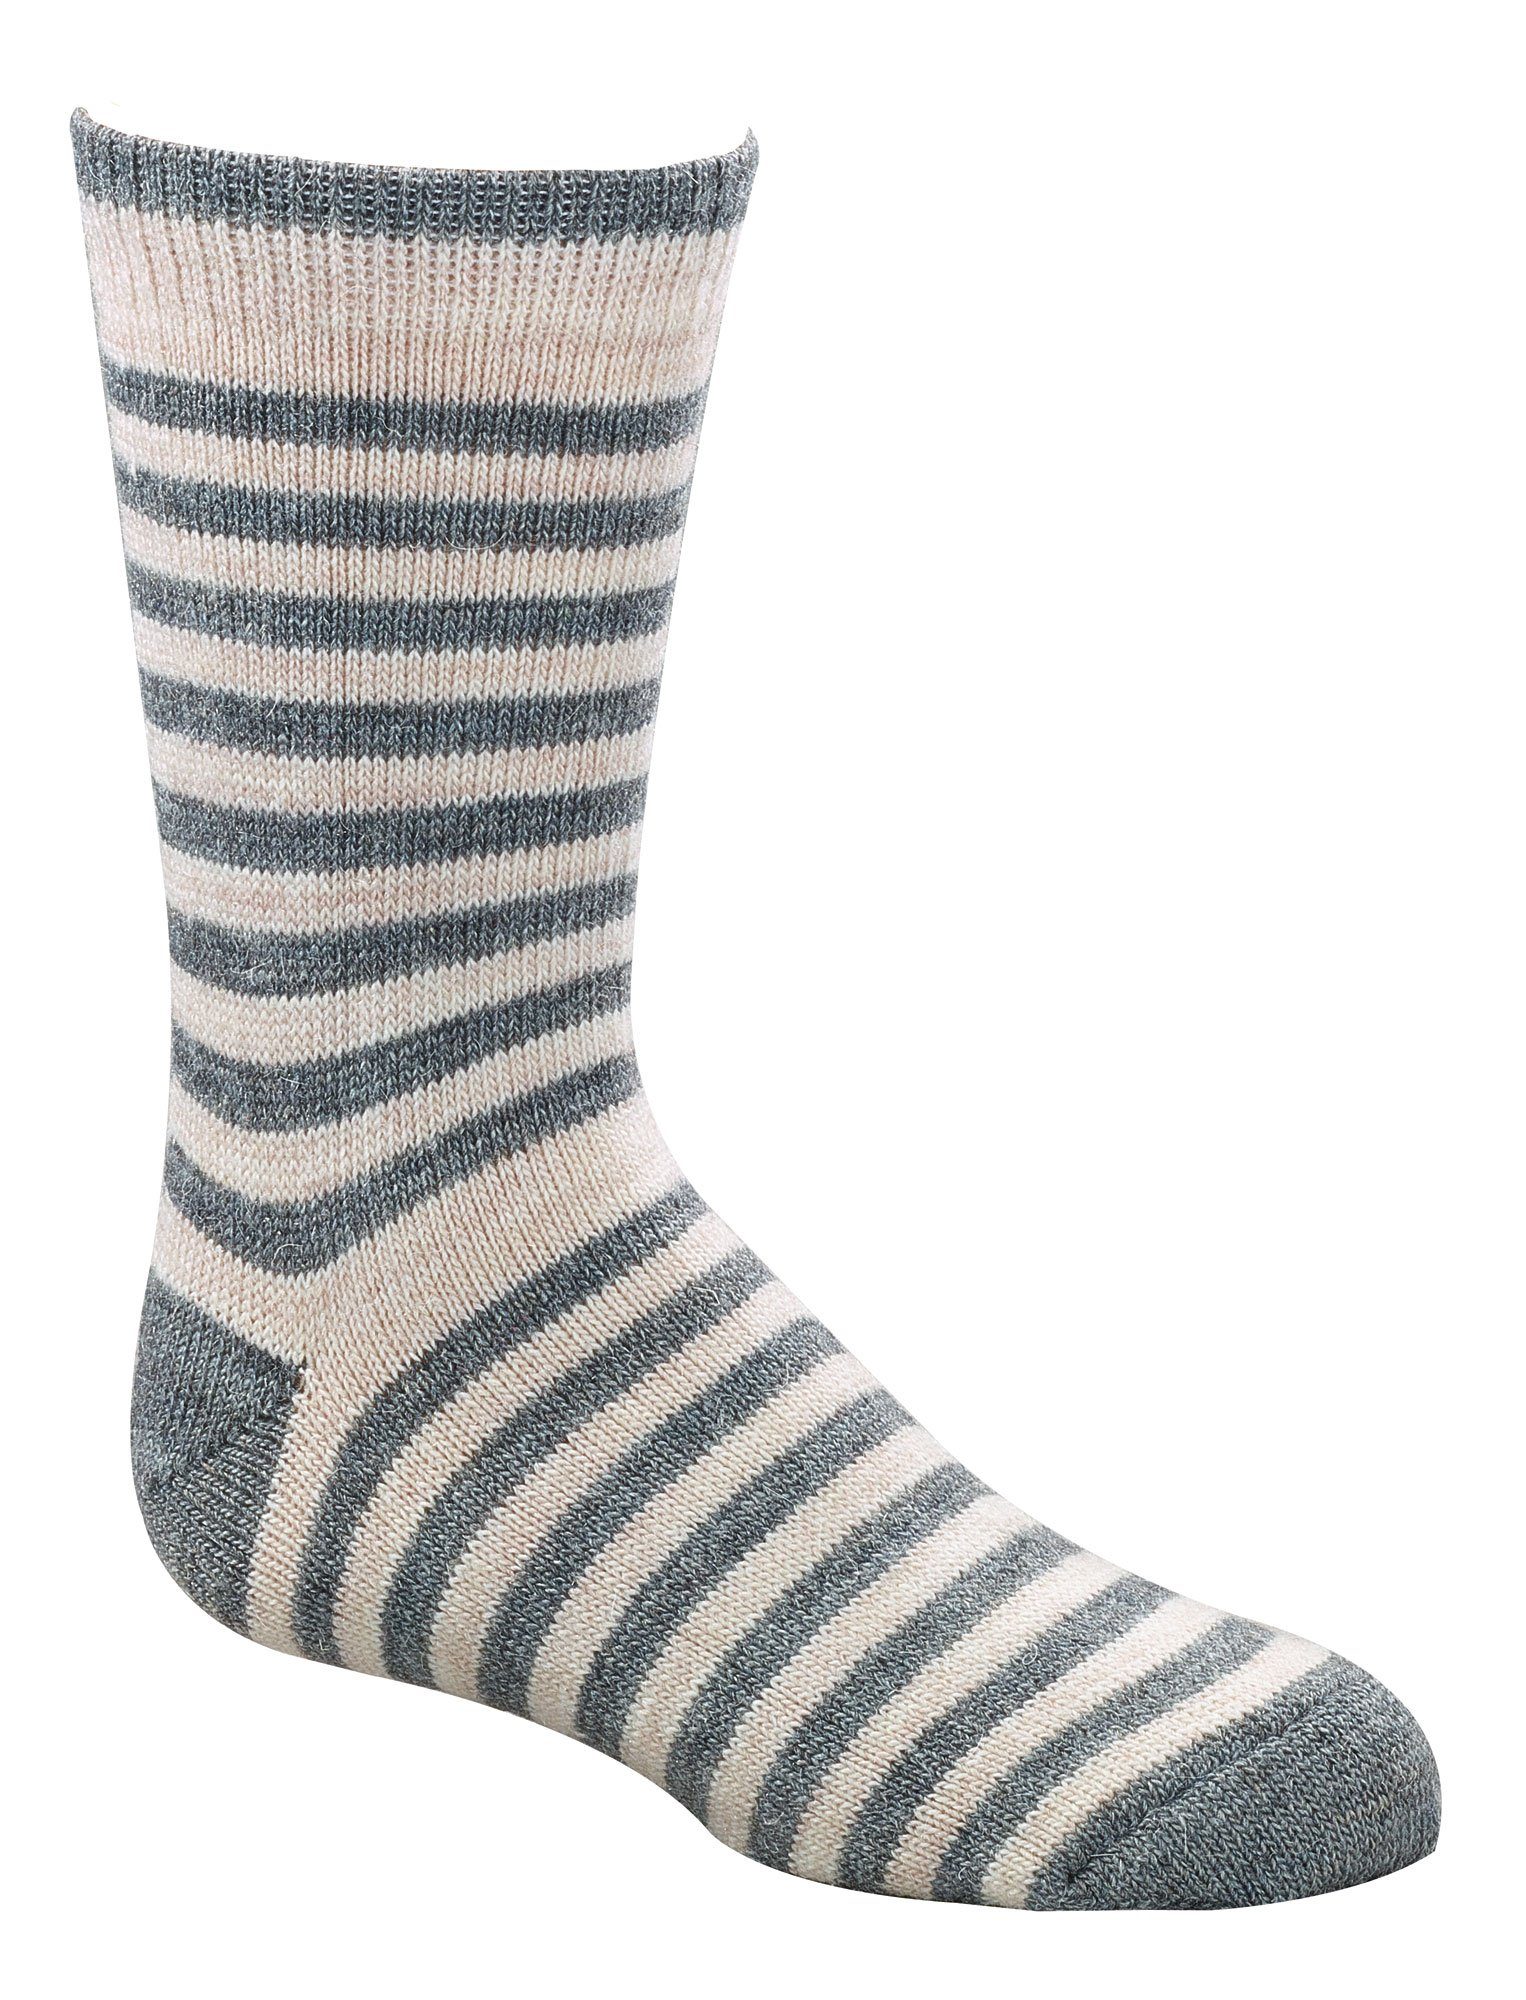 Socken für Teenager mit Wollsocken Wowerat Alpakawolle Paar) (2 Damen Kinder Socken